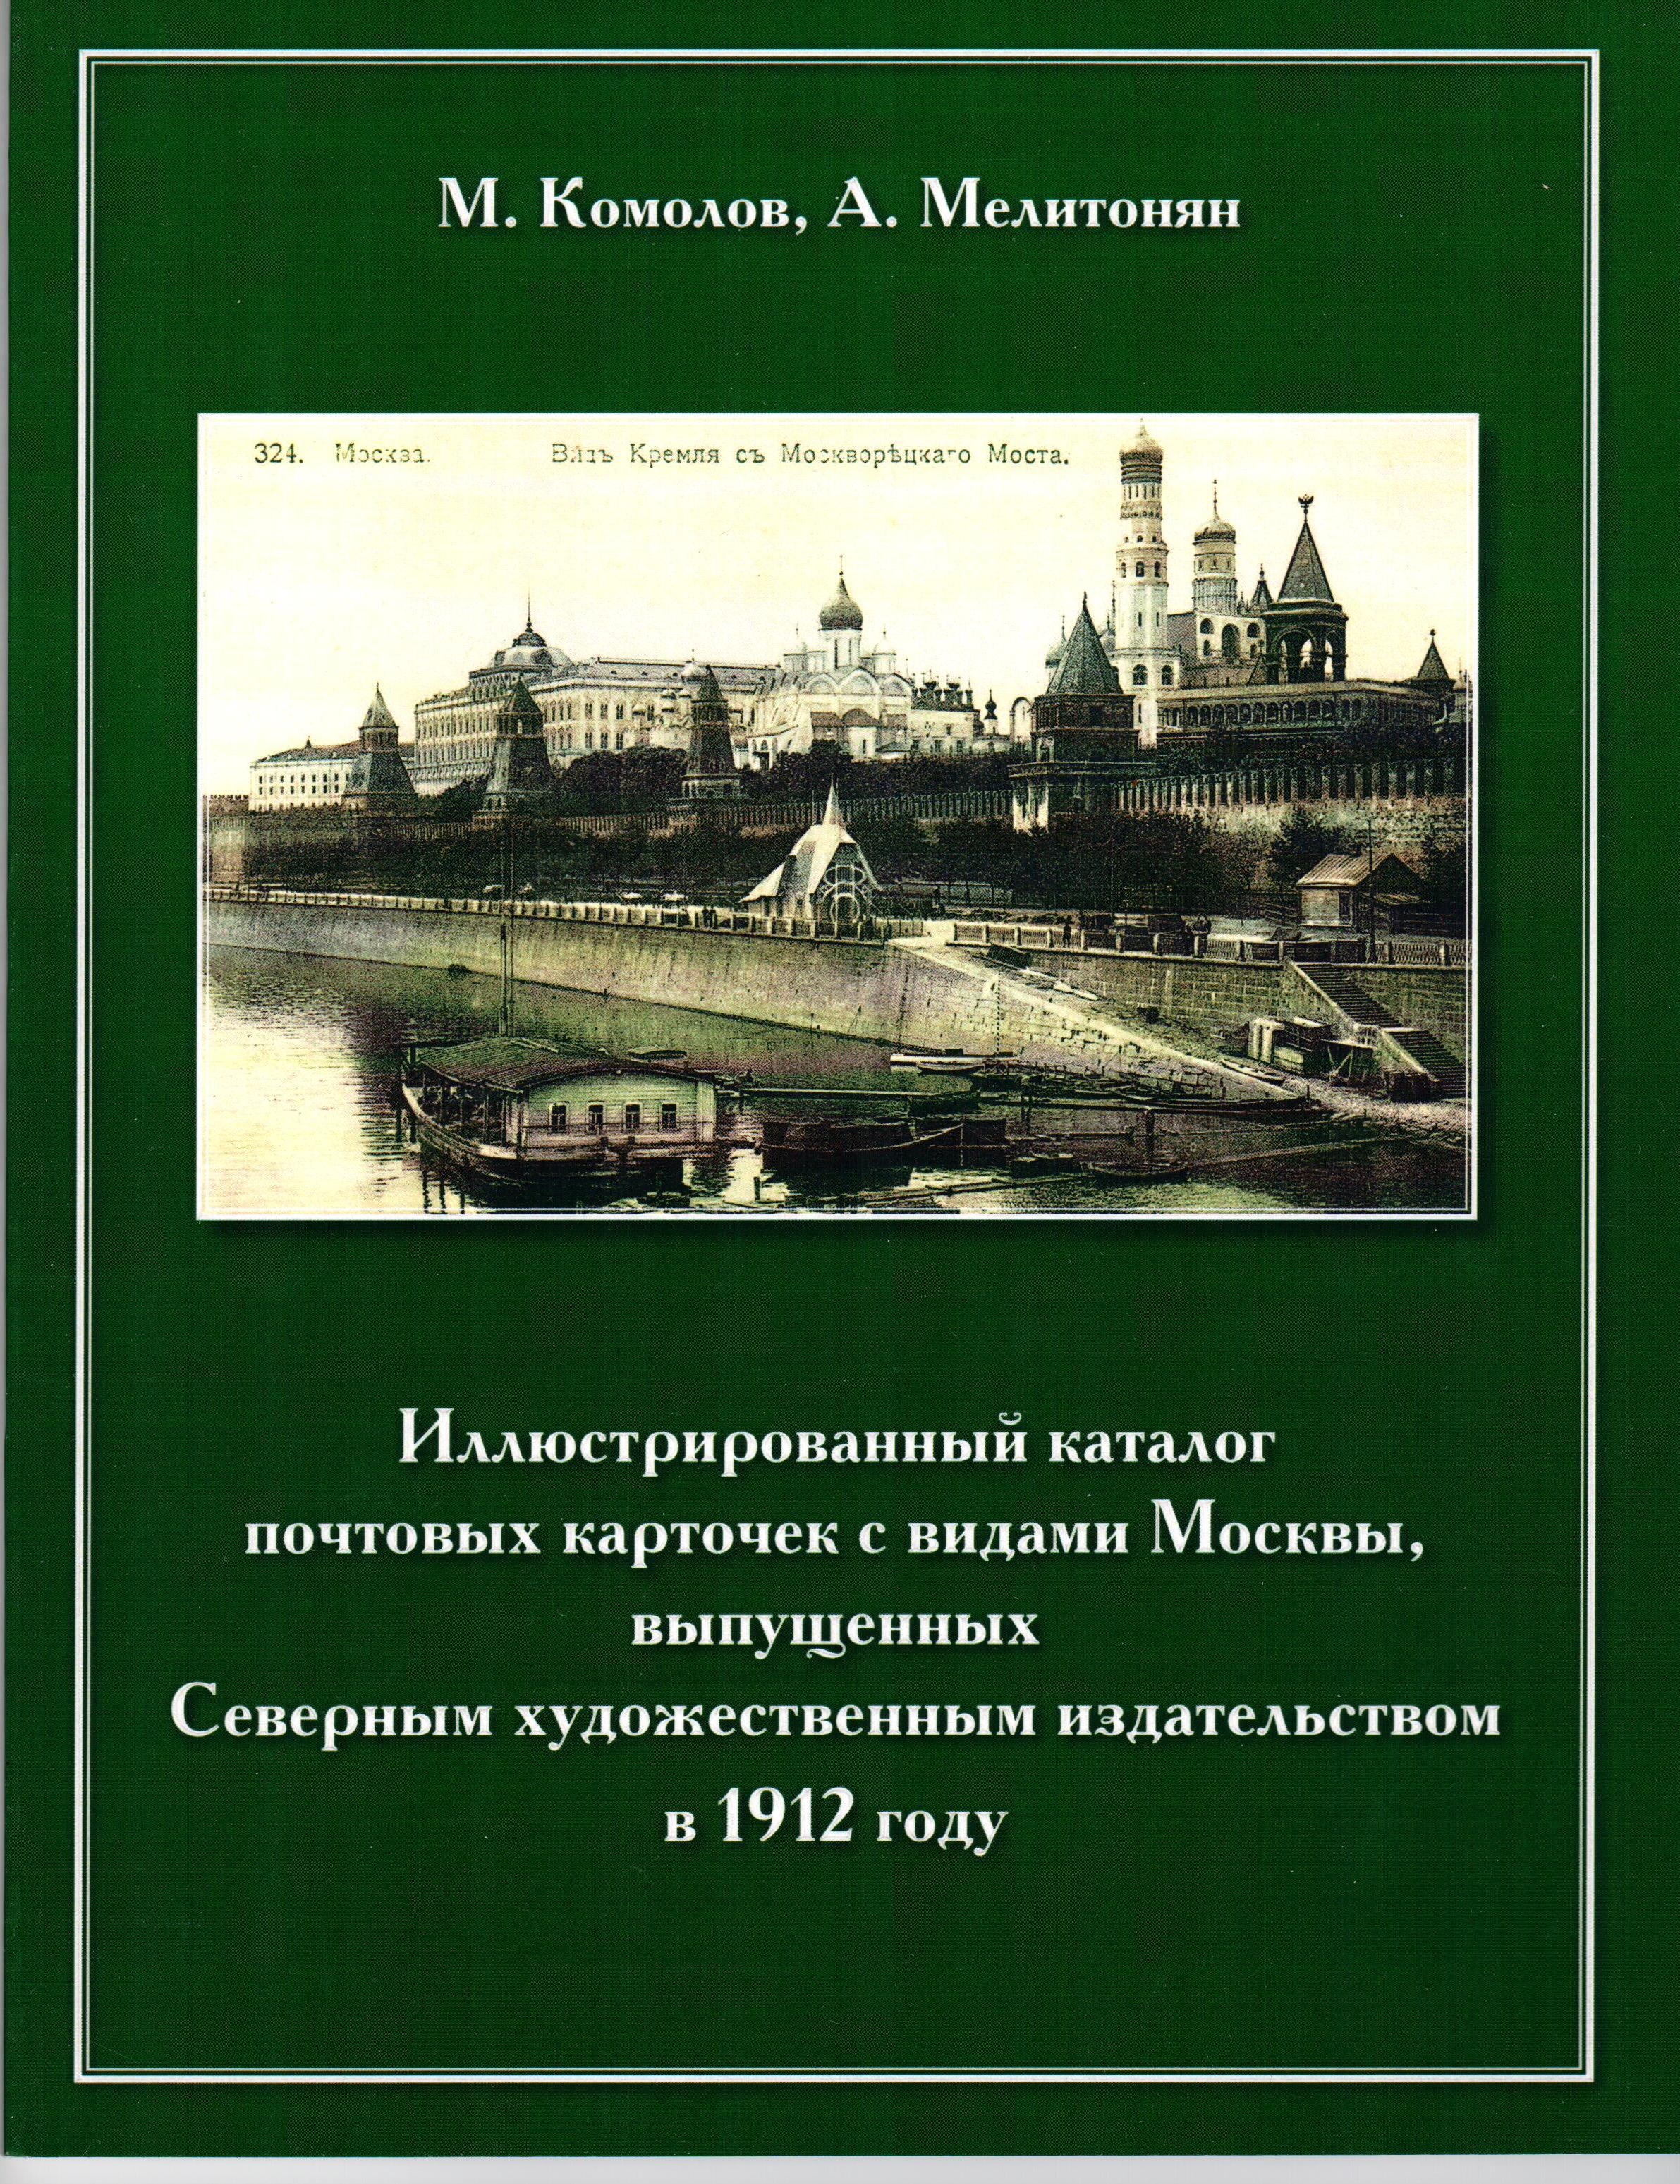 Комолов М, Мелитонян А. Иллюстрированный каталог почтовых карточек с видами Москвы, выпущенных Северным художественным издательством в 1912 году. 